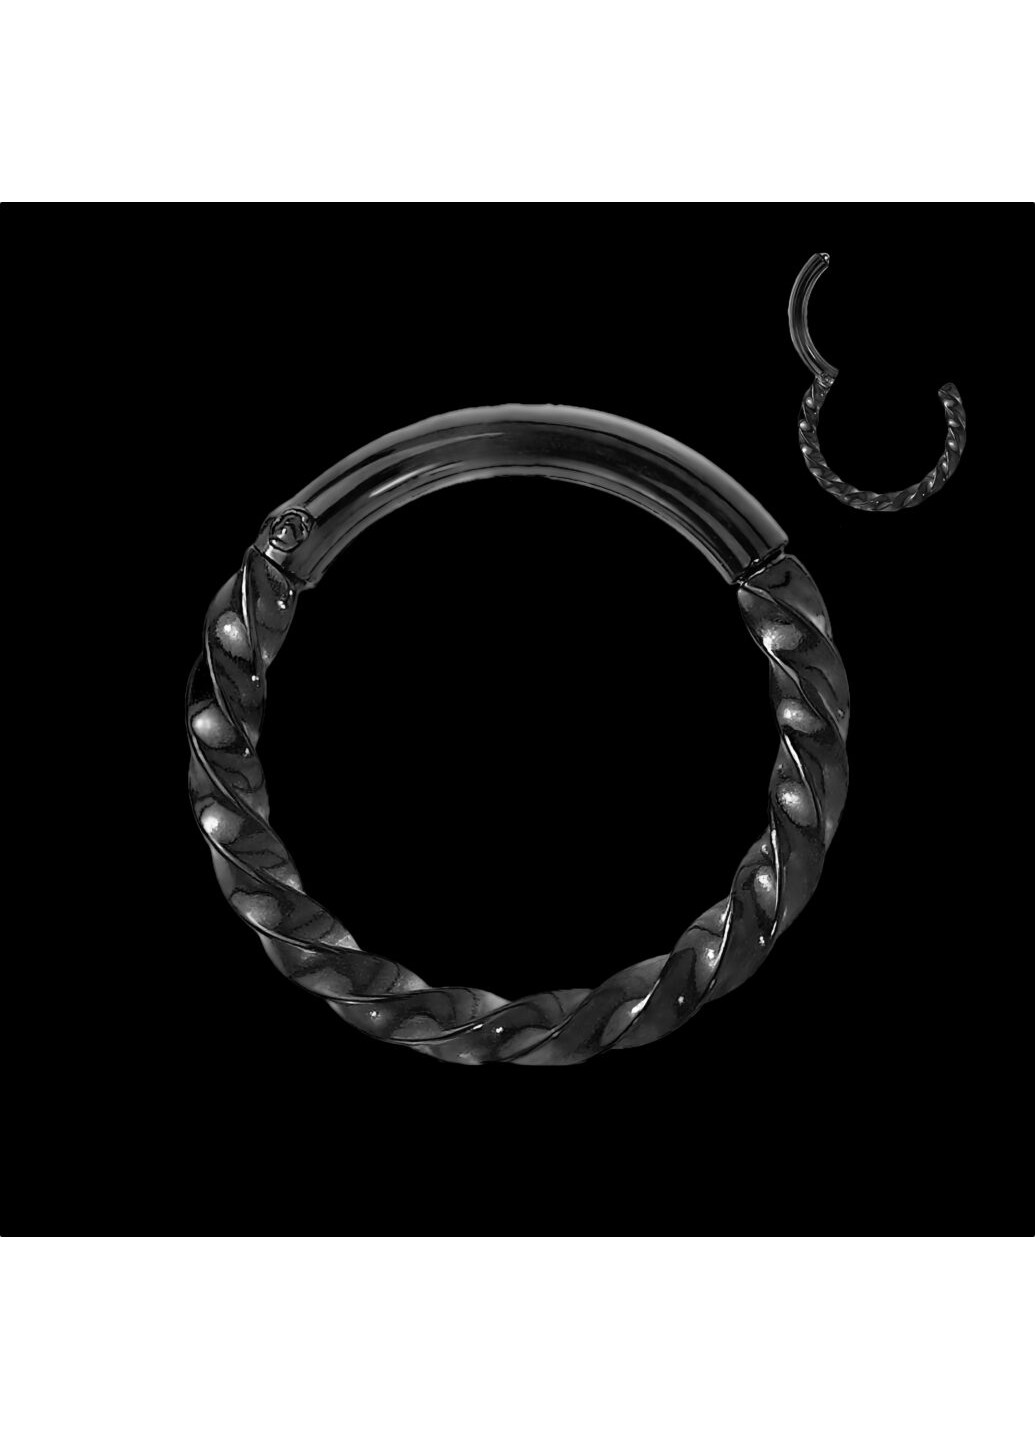 Кольцо кликер (спираль) из стали RH72 серьга для пирсинга септума носа, хряща уха, трагуса, хеликса, брови, губ цвет Розовое Spikes (260395472)